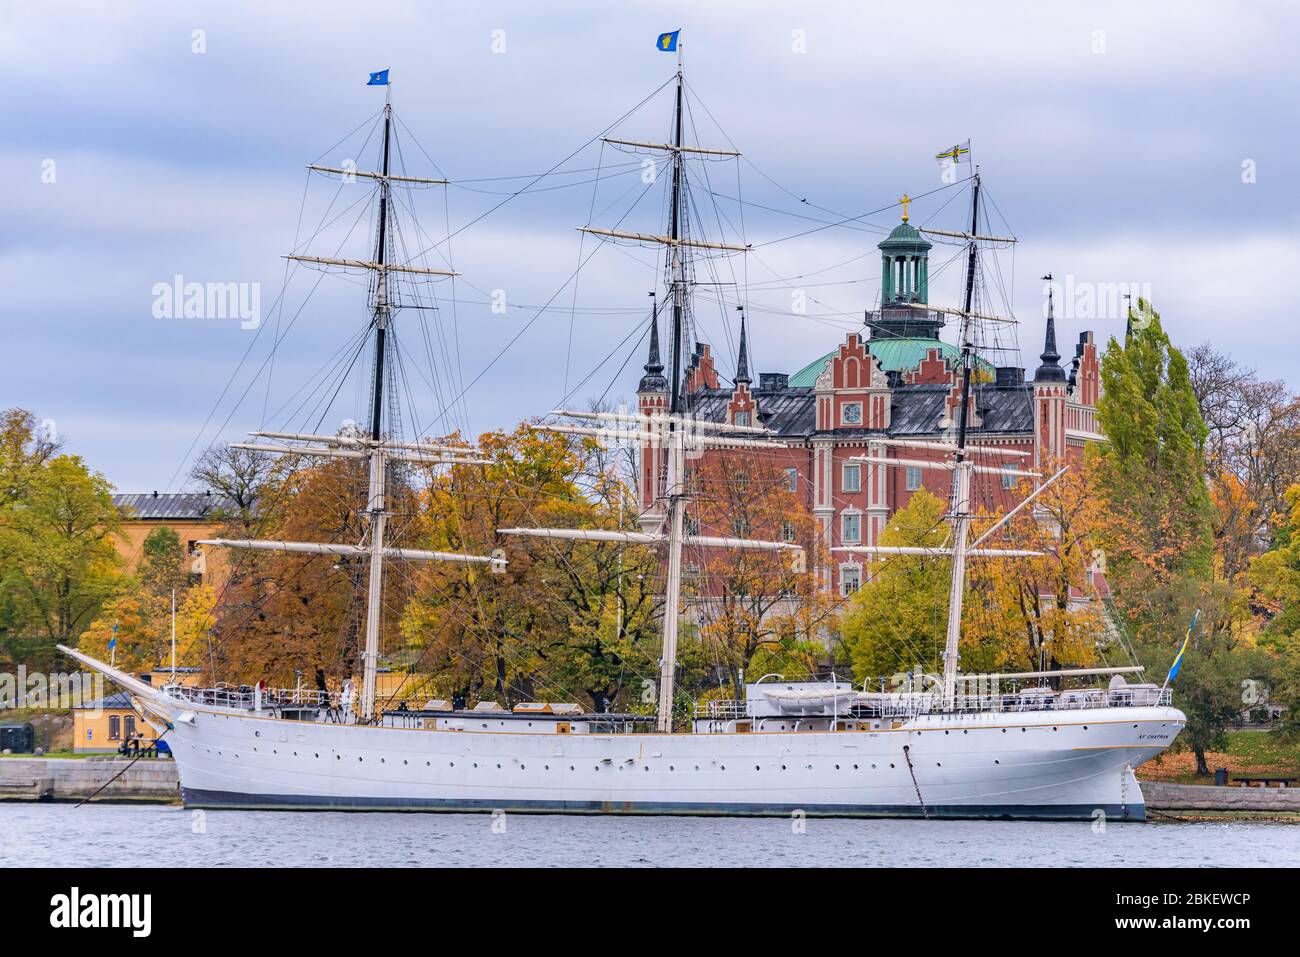 Stockholm, Sweden. AF Chapman, formerly Dunboyne, full-rigged steel ship moored on the western shore of the islet Skeppsholmen. Stock Photo